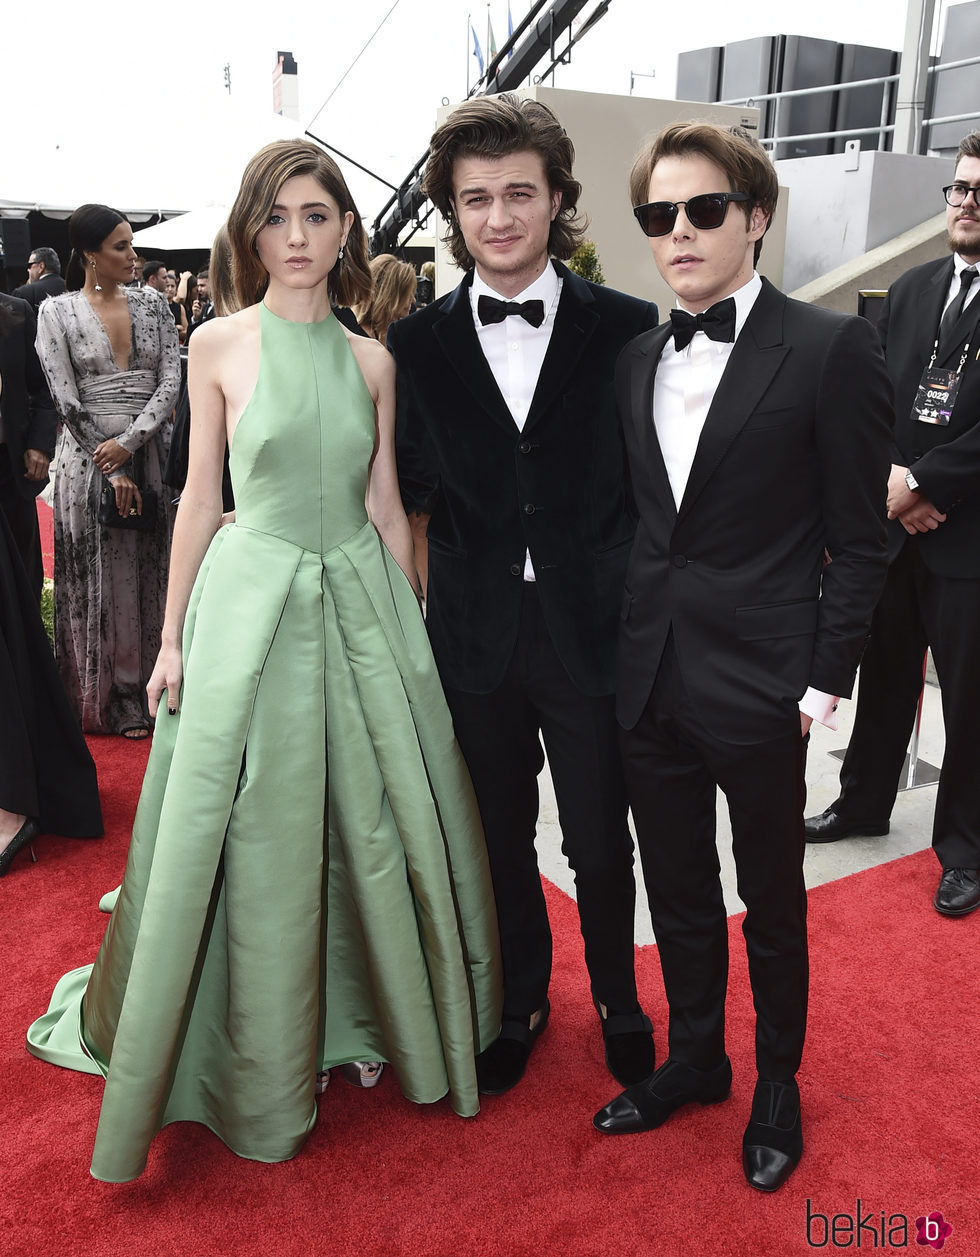 Natalia Dyer, Joe Keery y Charlie Heaton en la alfombra roja de los Premios Emmy 2017